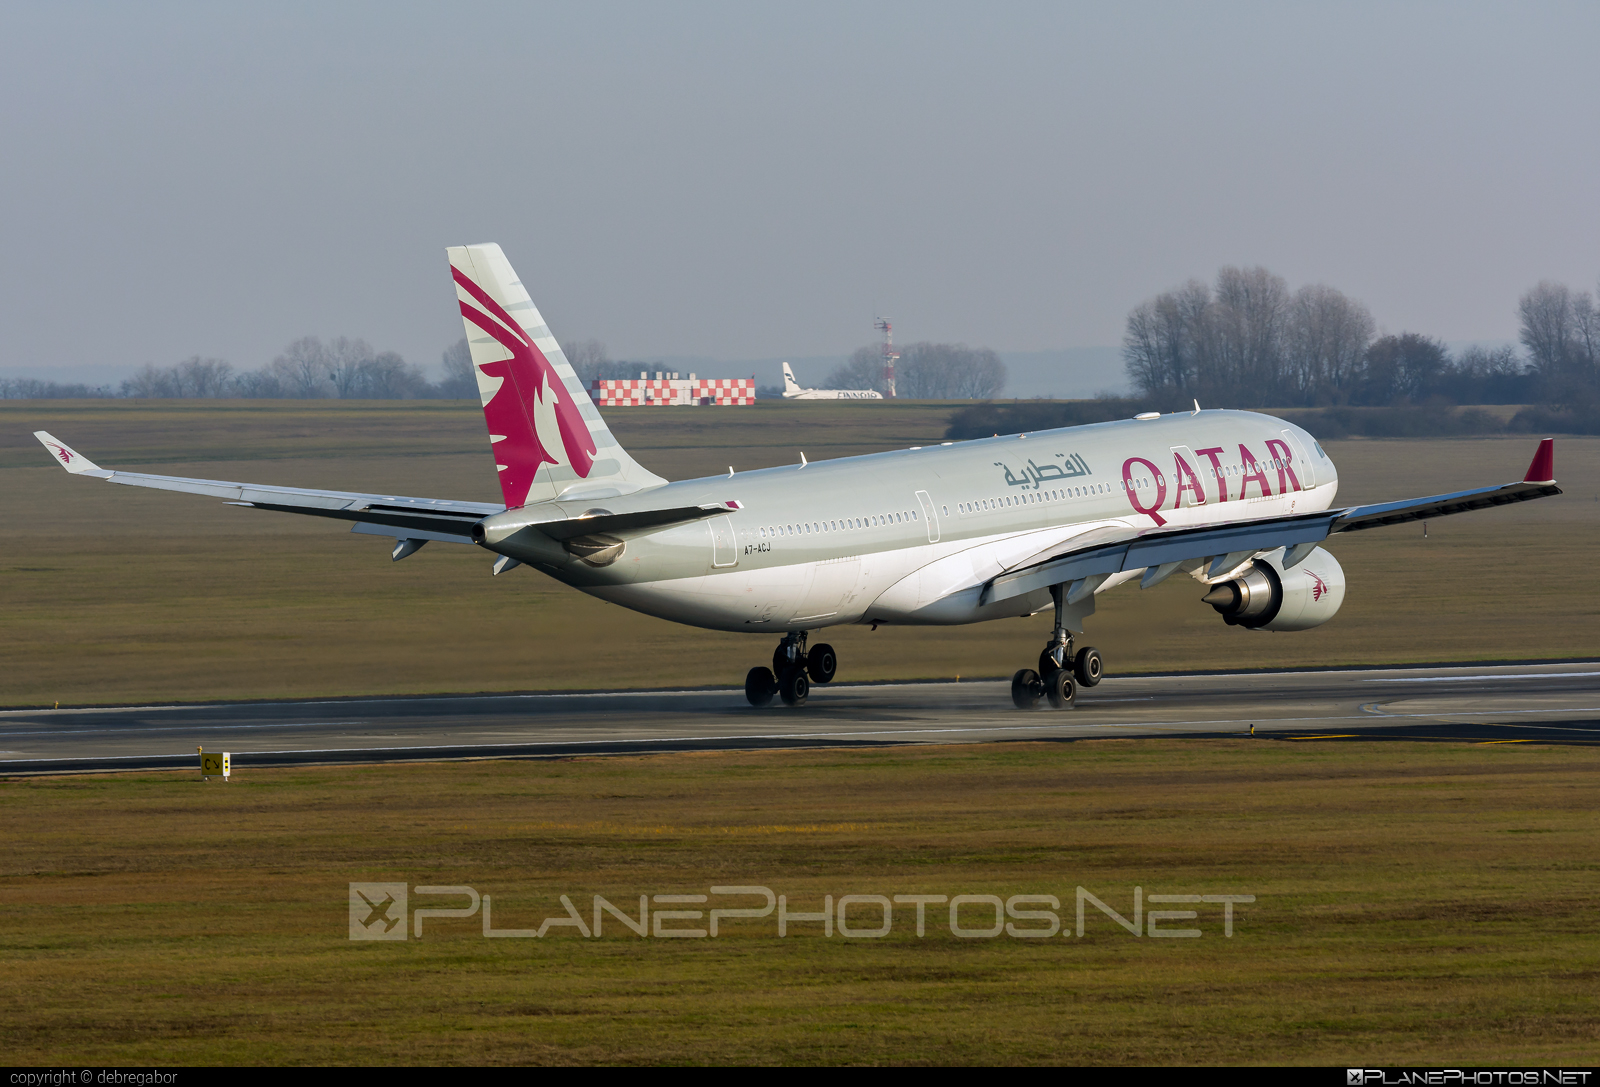 Airbus A330-202 - A7-ACJ operated by Qatar Airways #a330 #a330family #airbus #airbus330 #qatarairways